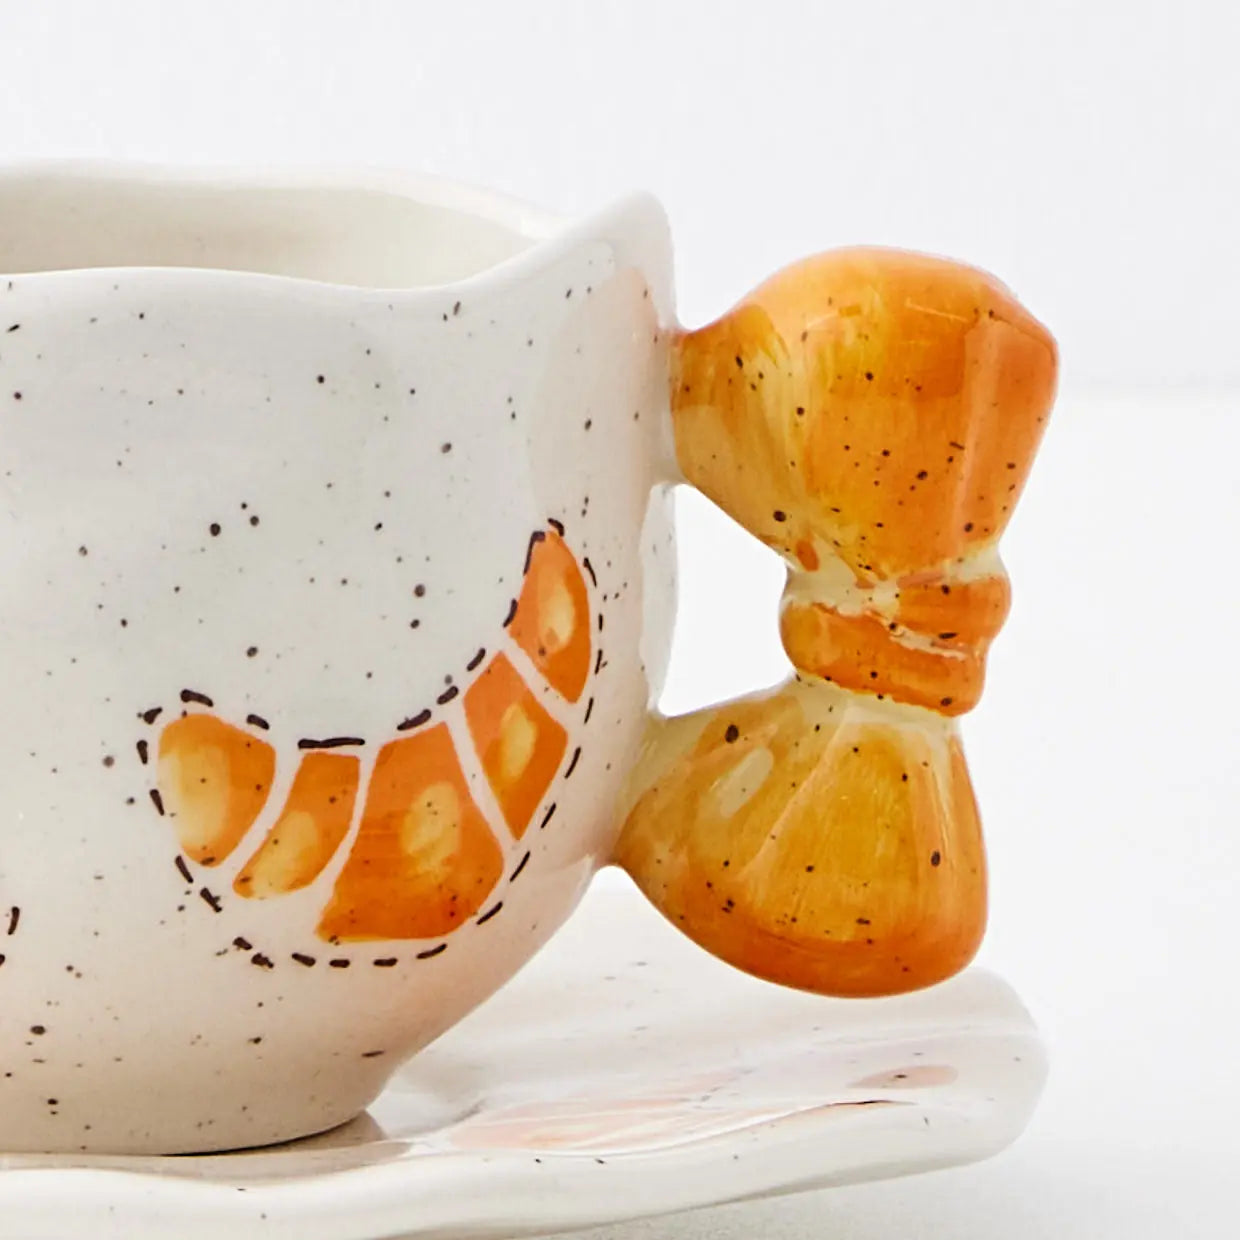 Le Croissant Ceramic Mug & Saucer - GigiandTom